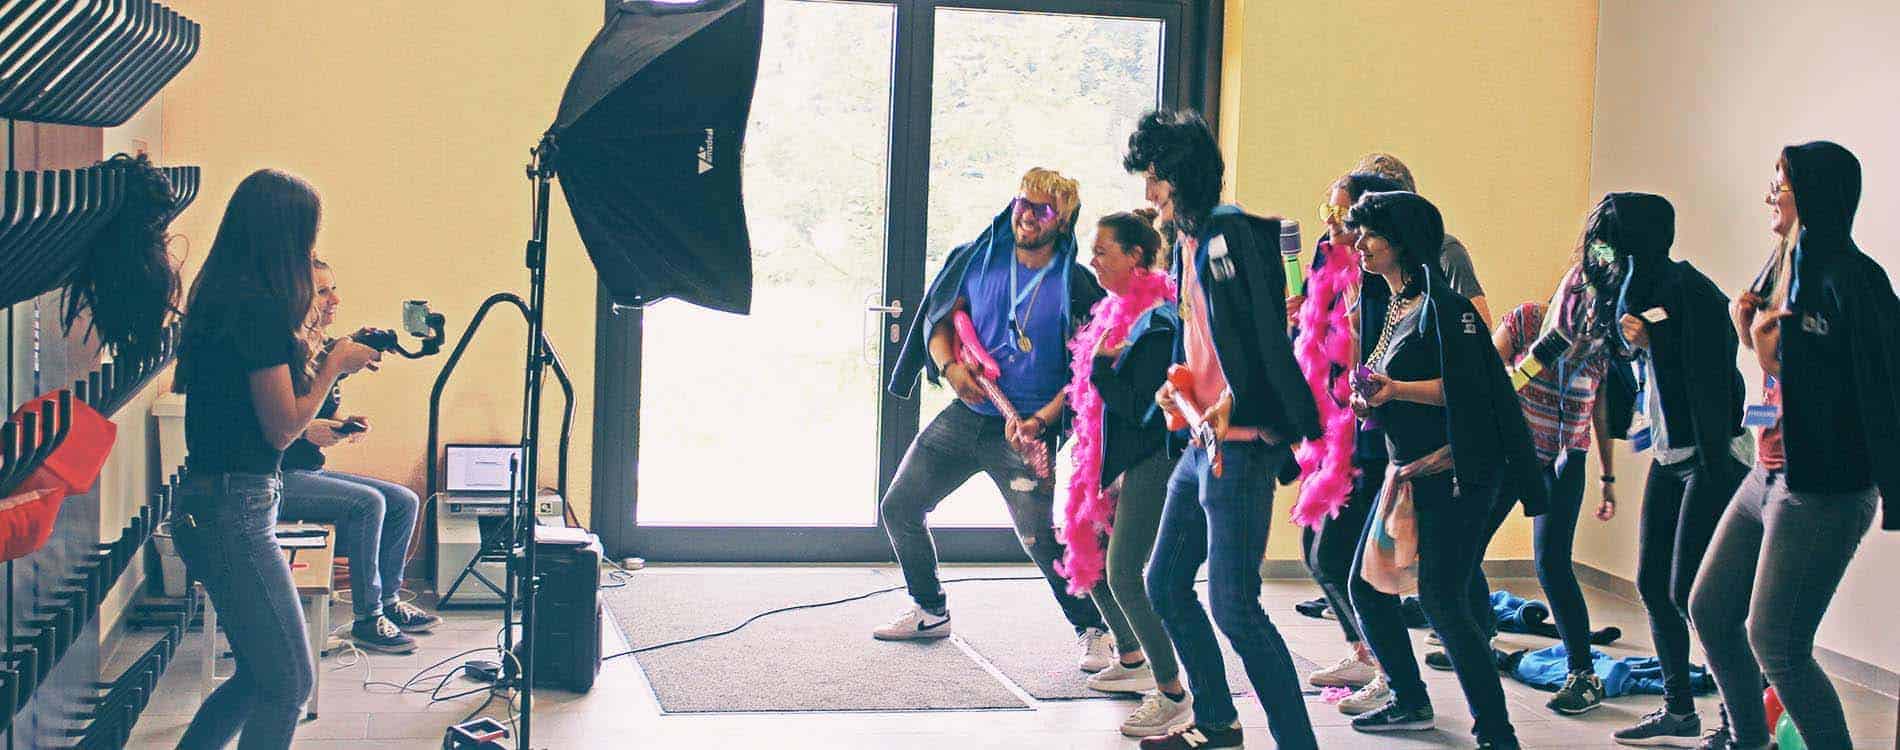 Team tanzt vor laufender Kamera für Musikvideo